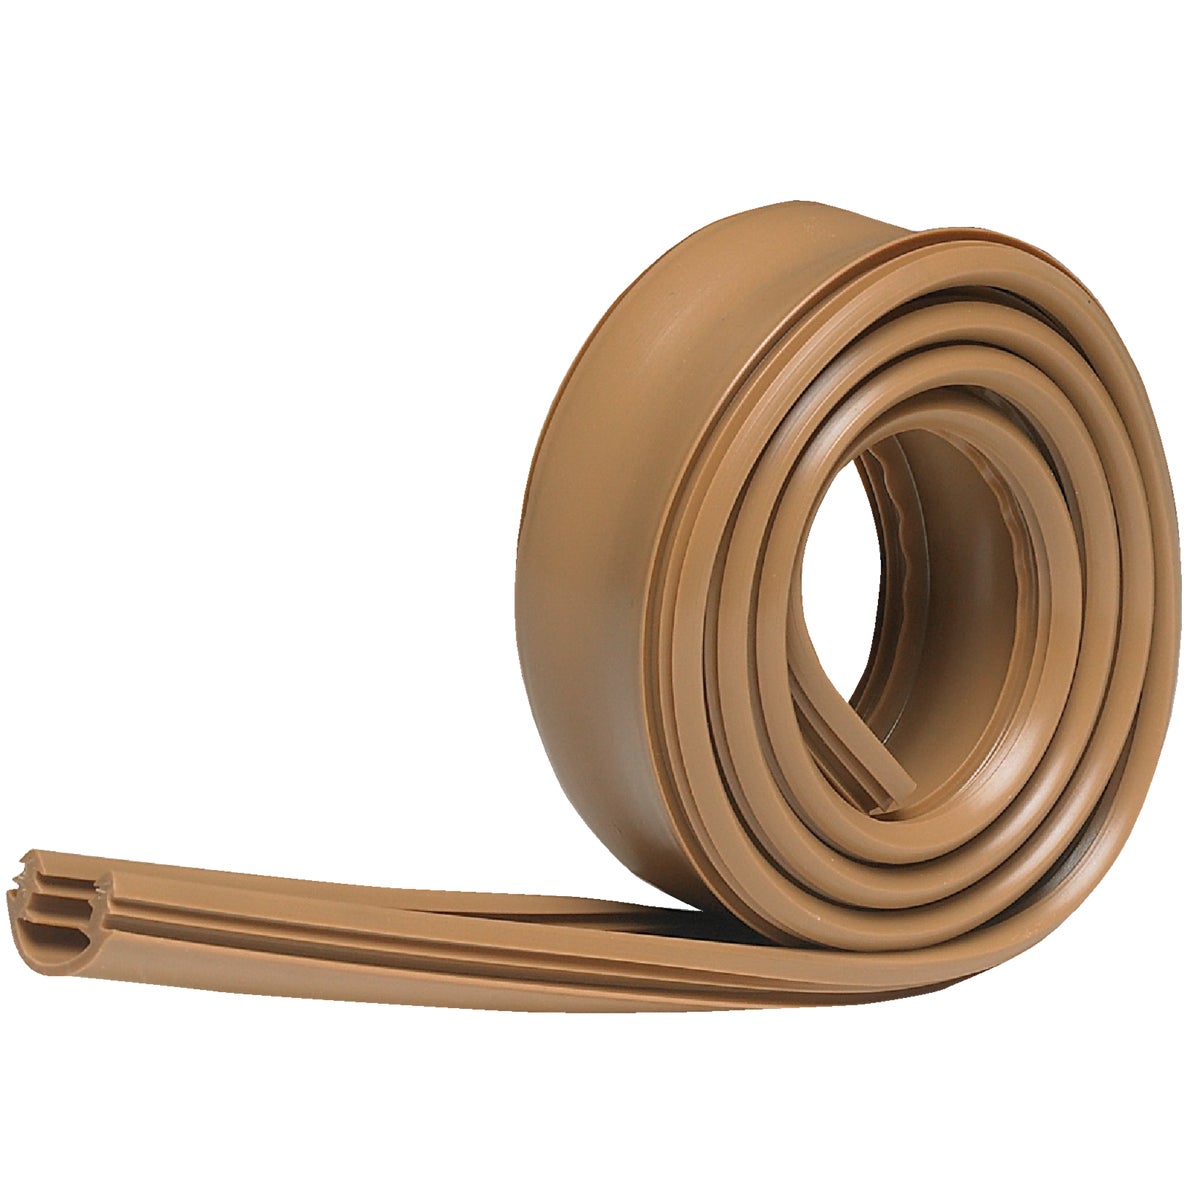 Item 271608, Vinyl insert for wood thresholds ensures tight seals against the bottom of 